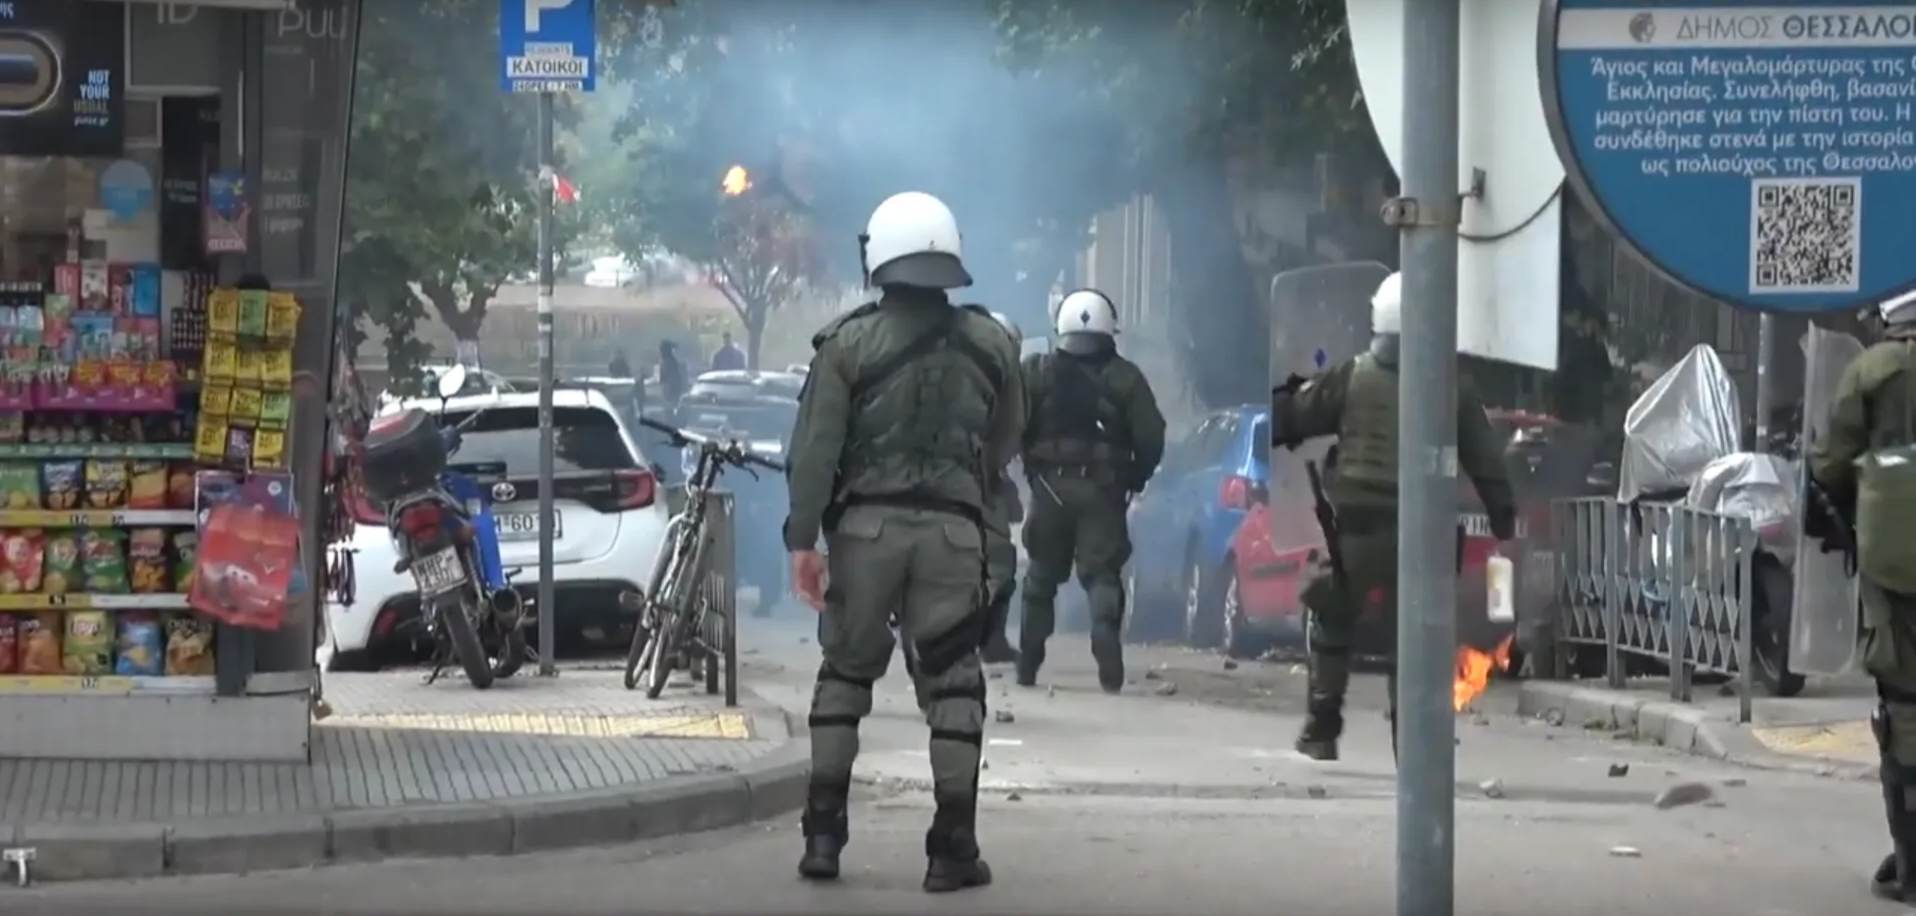 Απεργιακή πορεία & συγκρούσεις μετά την πορεία | Θεσσαλονίκη 9-11-2022. Θεσσαλονίκη | Ενημέρωση από την απεργιακή πορεία. Χιλιάδες [...]